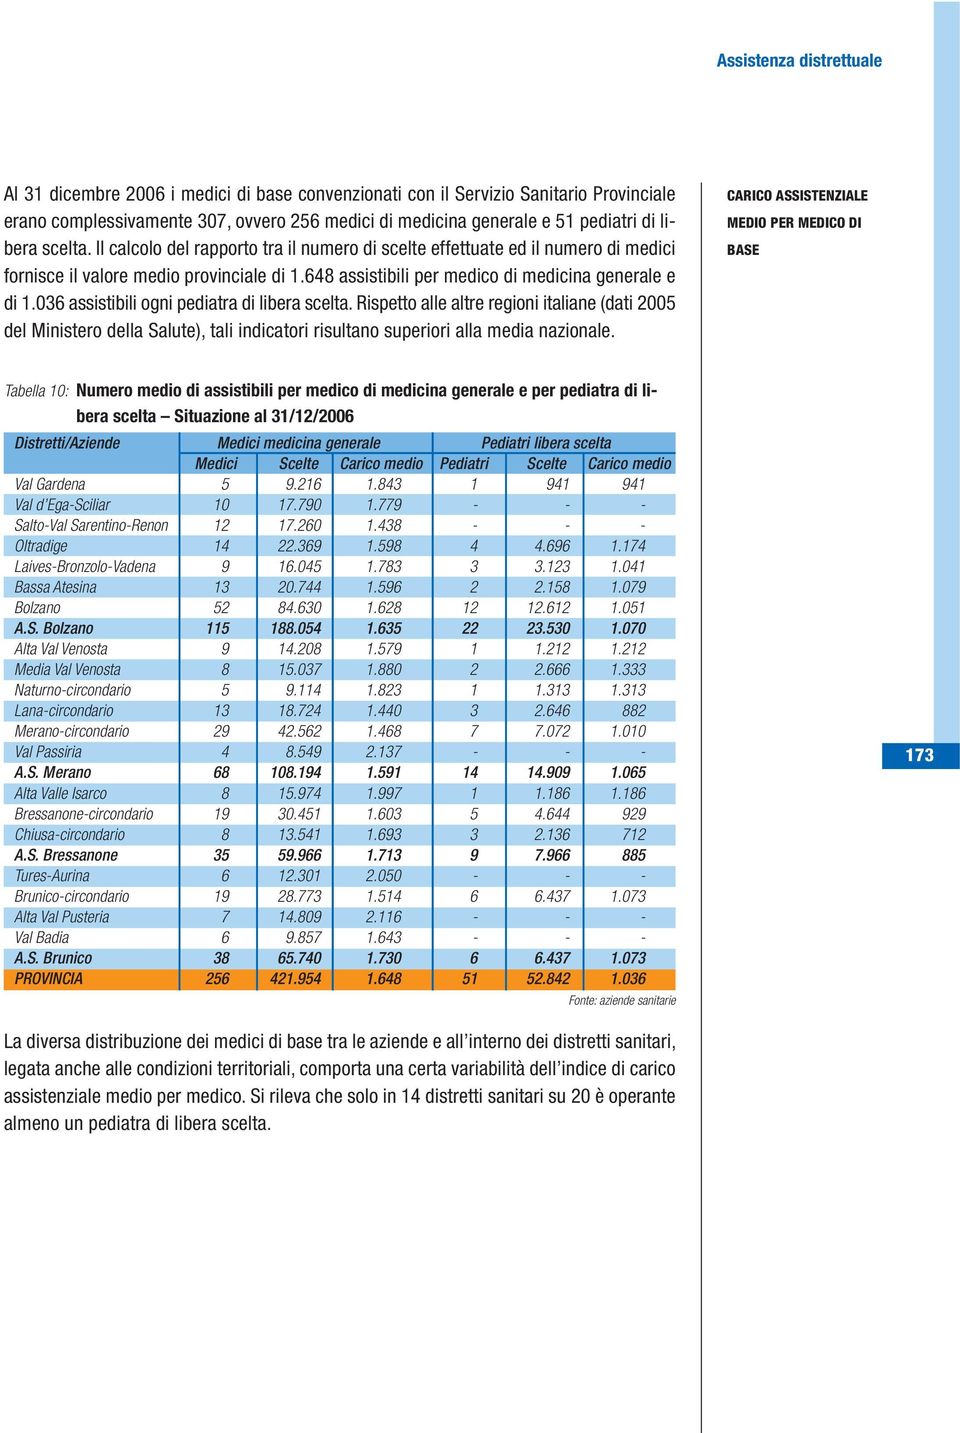 036 assistibili ogni pediatra di libera scelta. Rispetto alle altre regioni italiane (dati 2005 del Ministero della Salute), tali indicatori risultano superiori alla media nazionale.